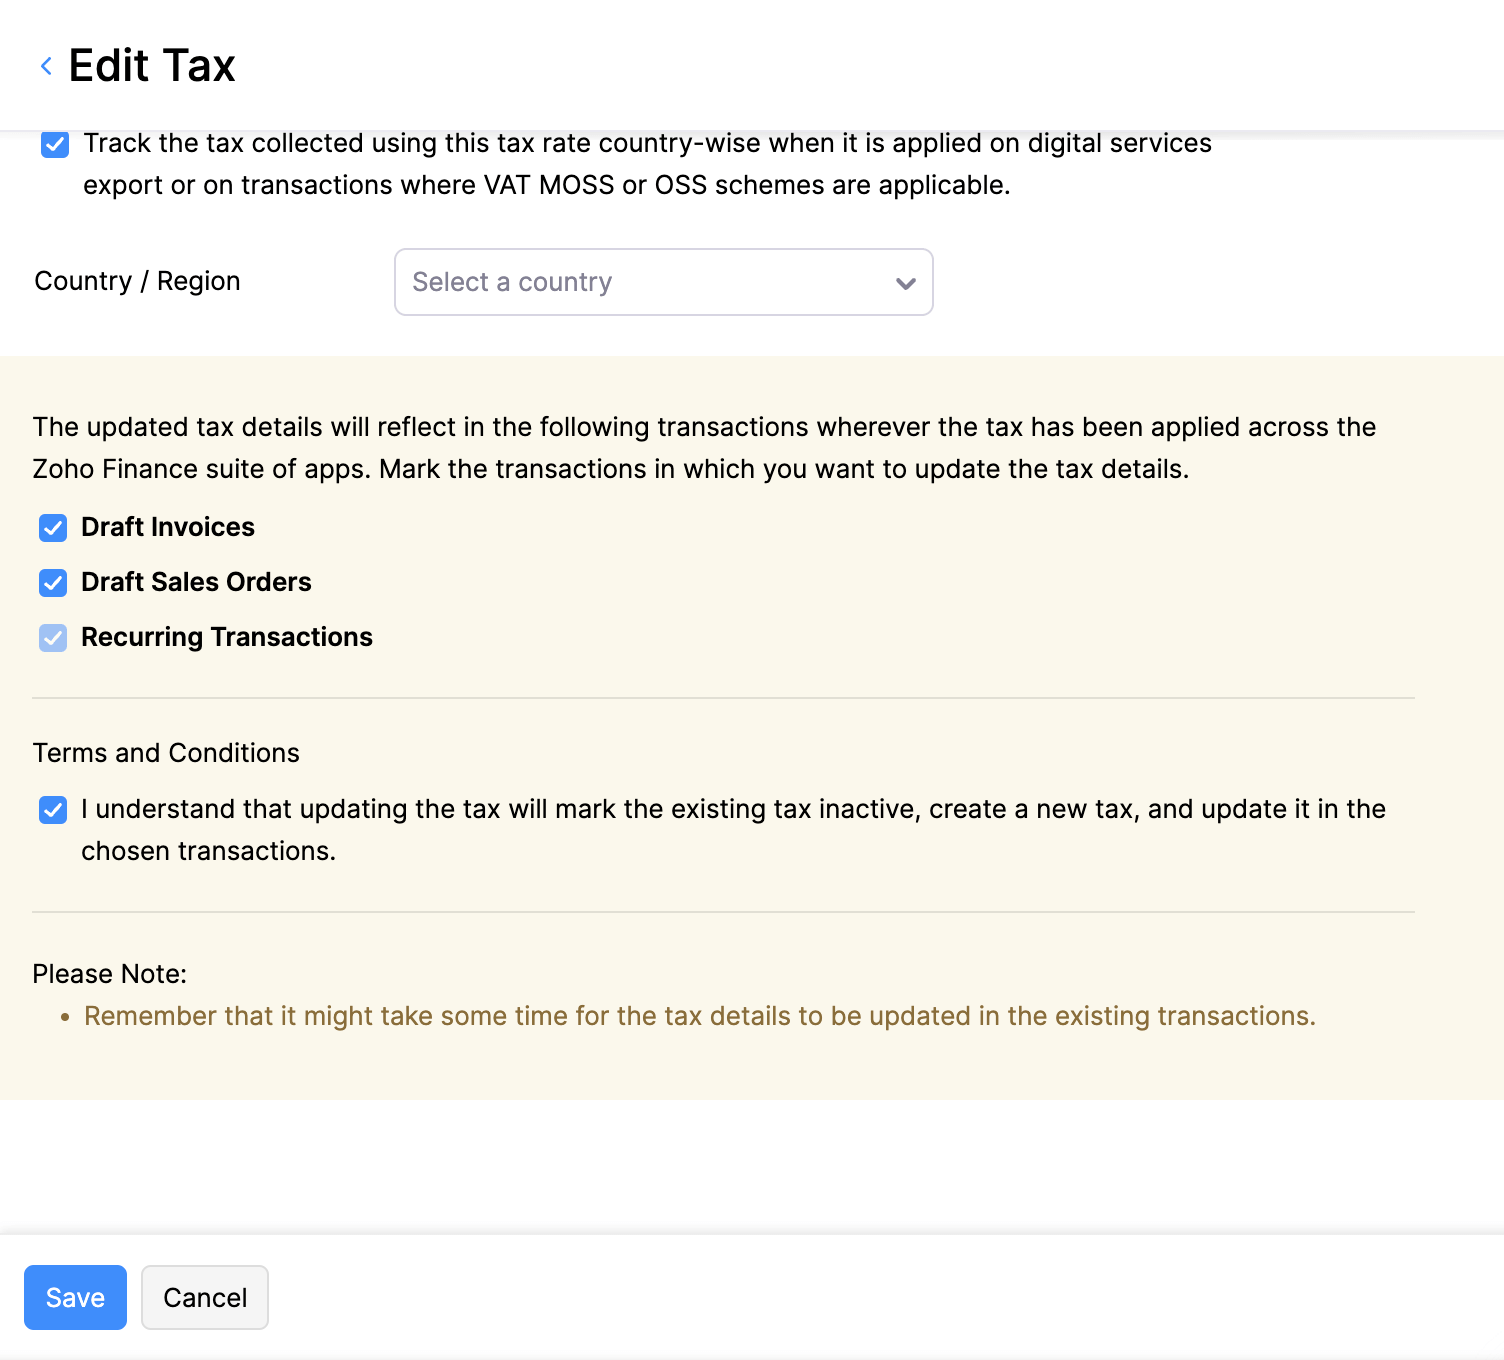 Edit Tax Rate